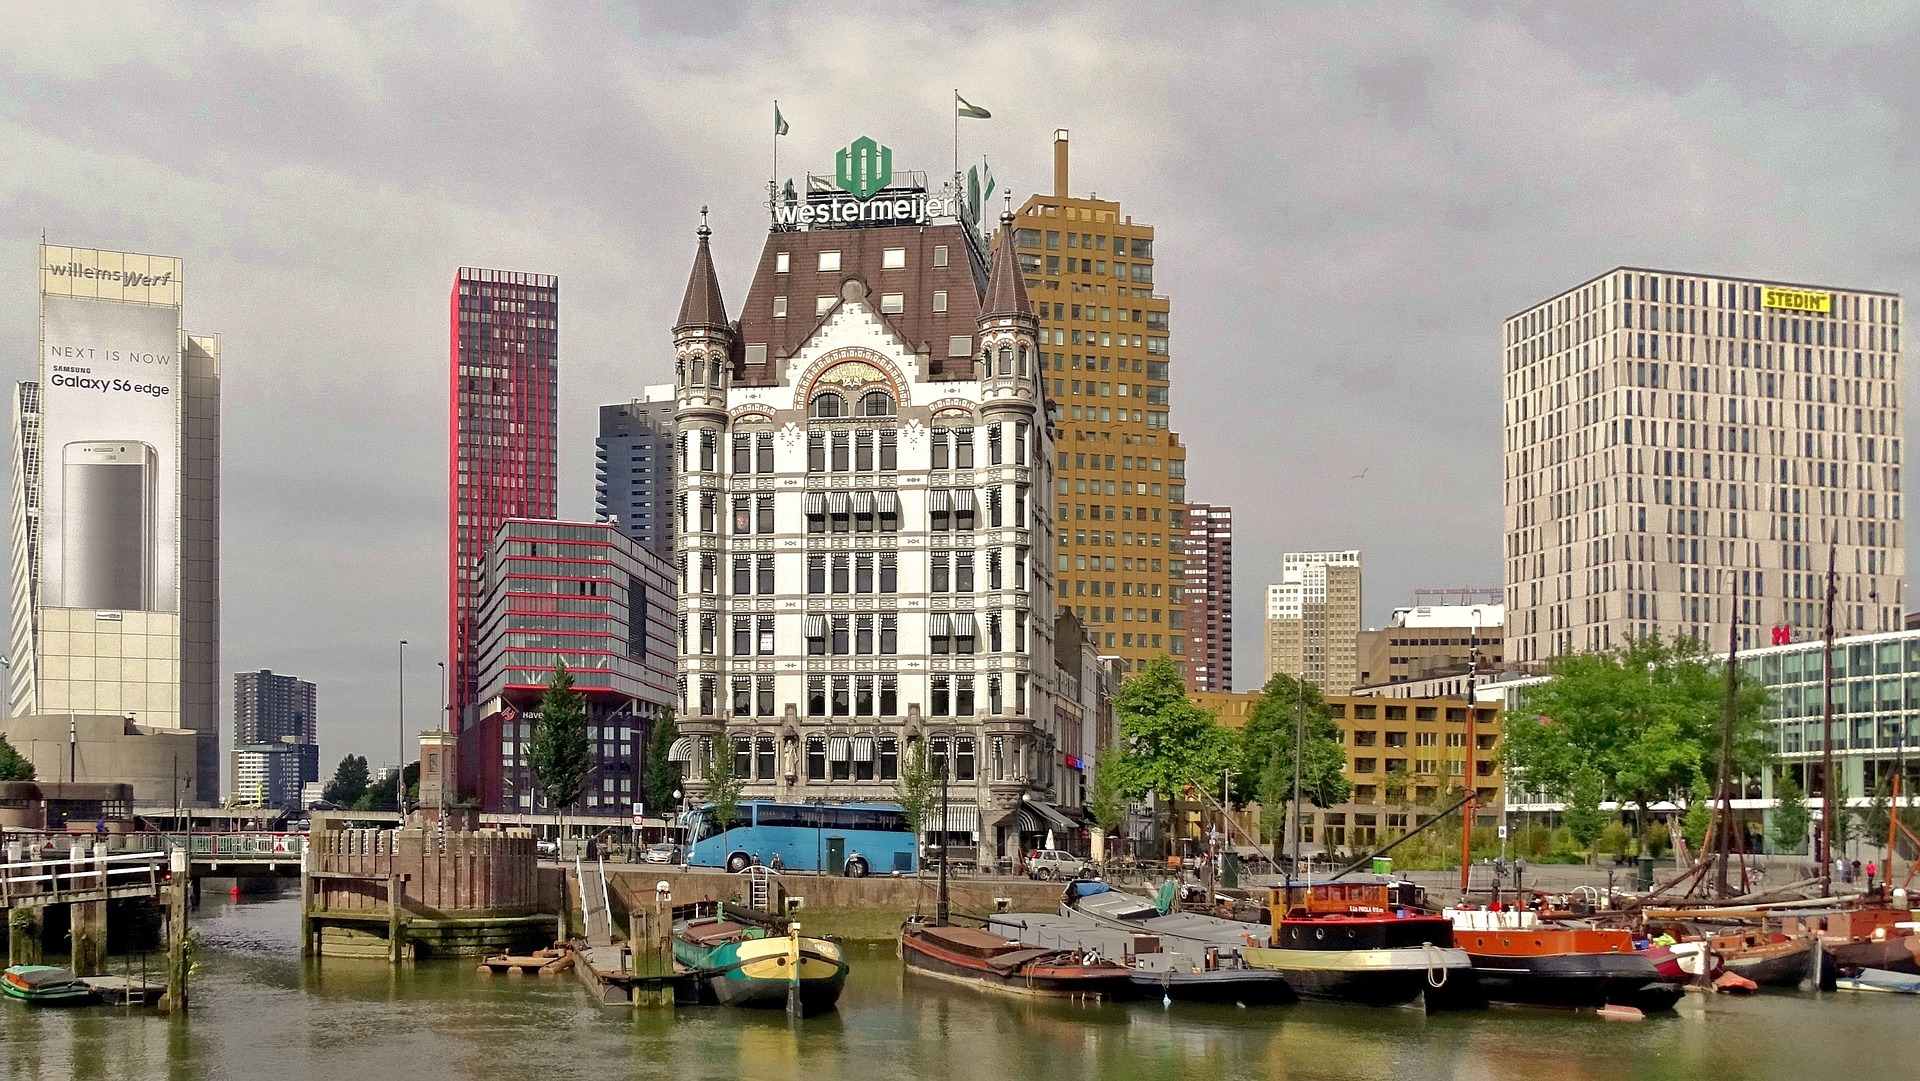 Hafenrundfahrt Rotterdam Hotels ab 26,00€ die Nacht - Ferien in Holland 2